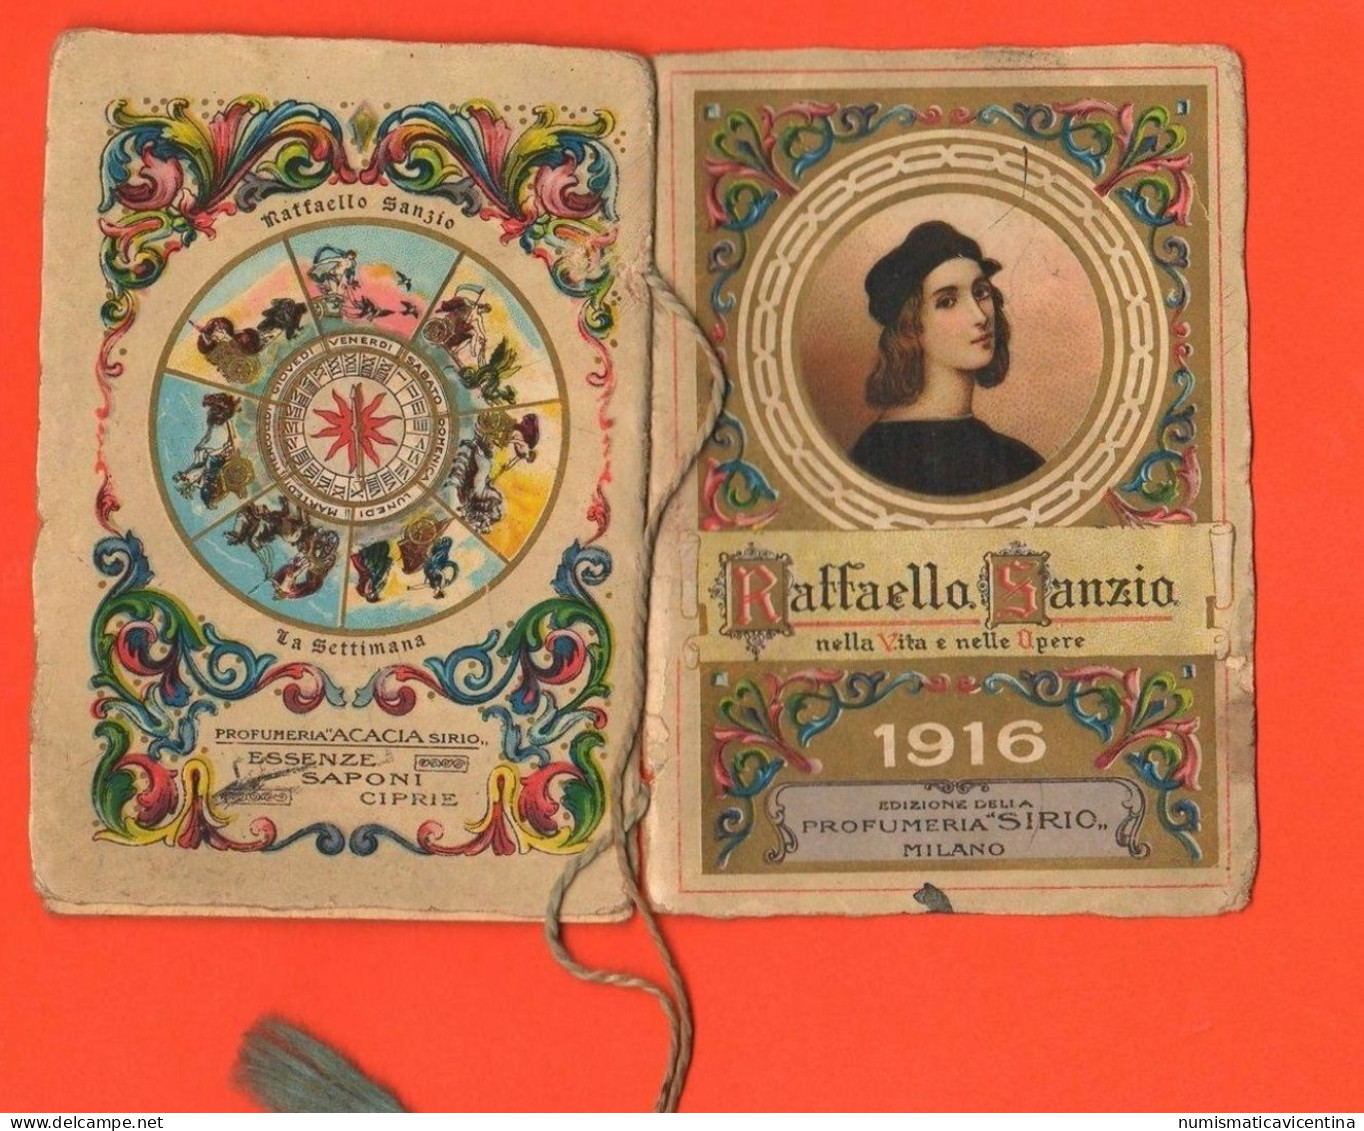 Forlì 1916 Calendario Calendarietto Profumi Saponi Essenze Sirio Milano & F.lli Damerin Raffaello Sanzio Calendar - Kleinformat : 1901-20